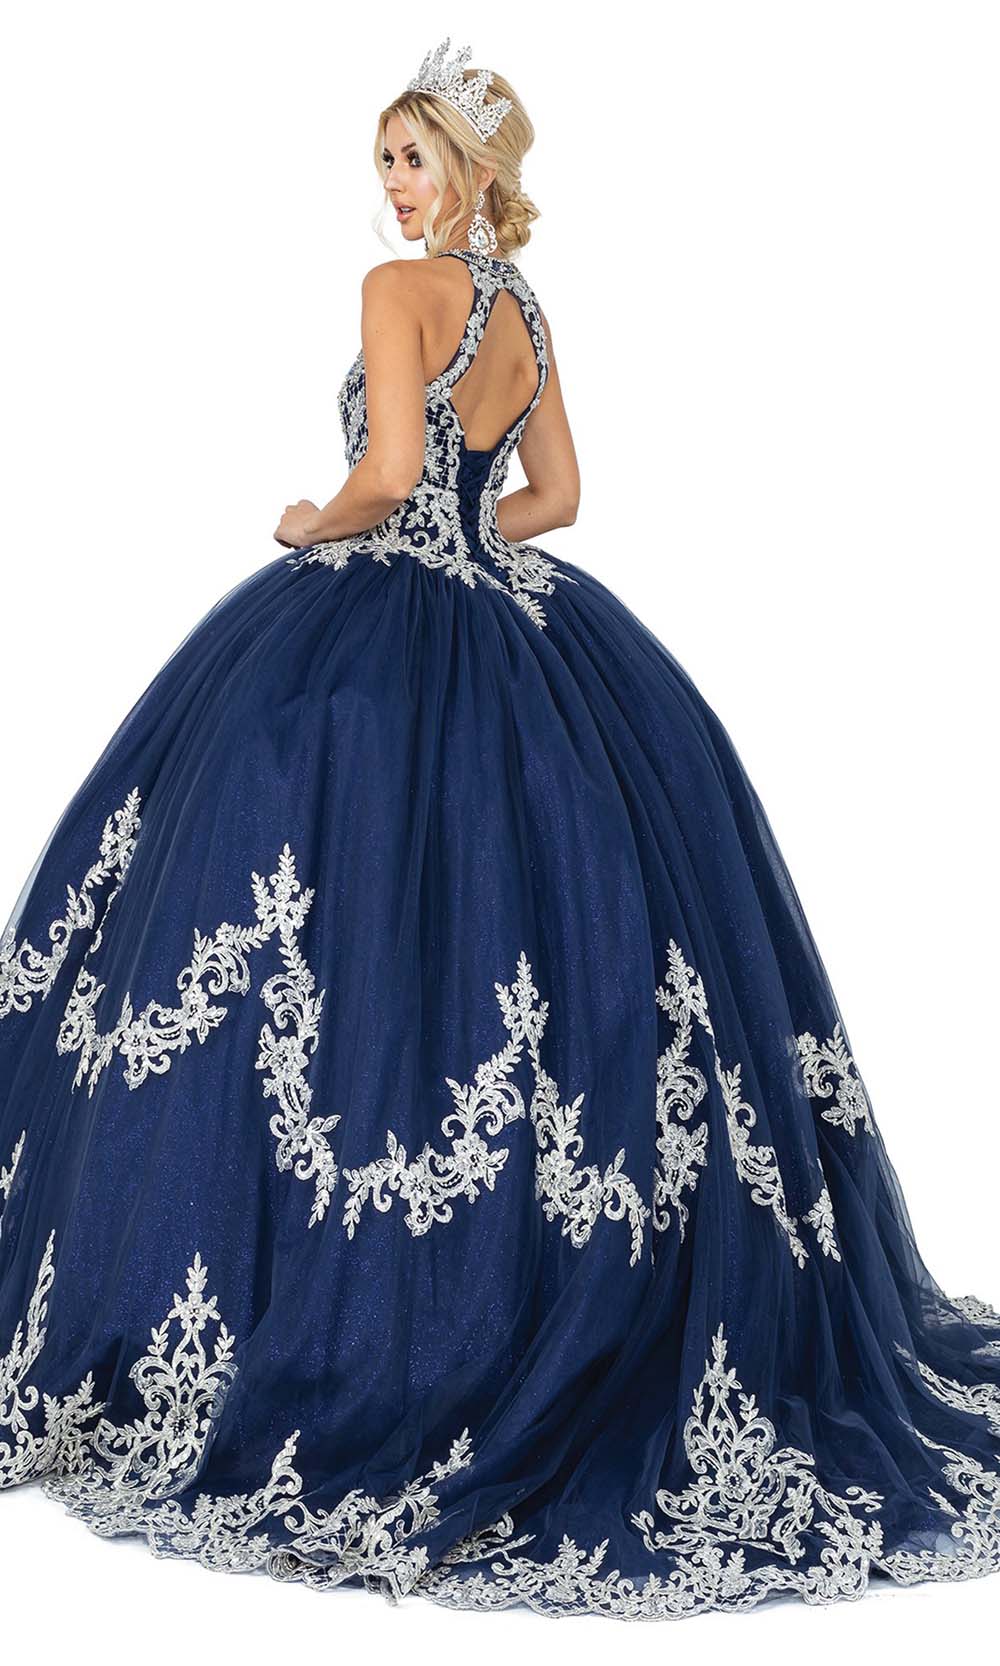 Dancing Queen - 1607 Metallic Applique Halter Gown In Blue